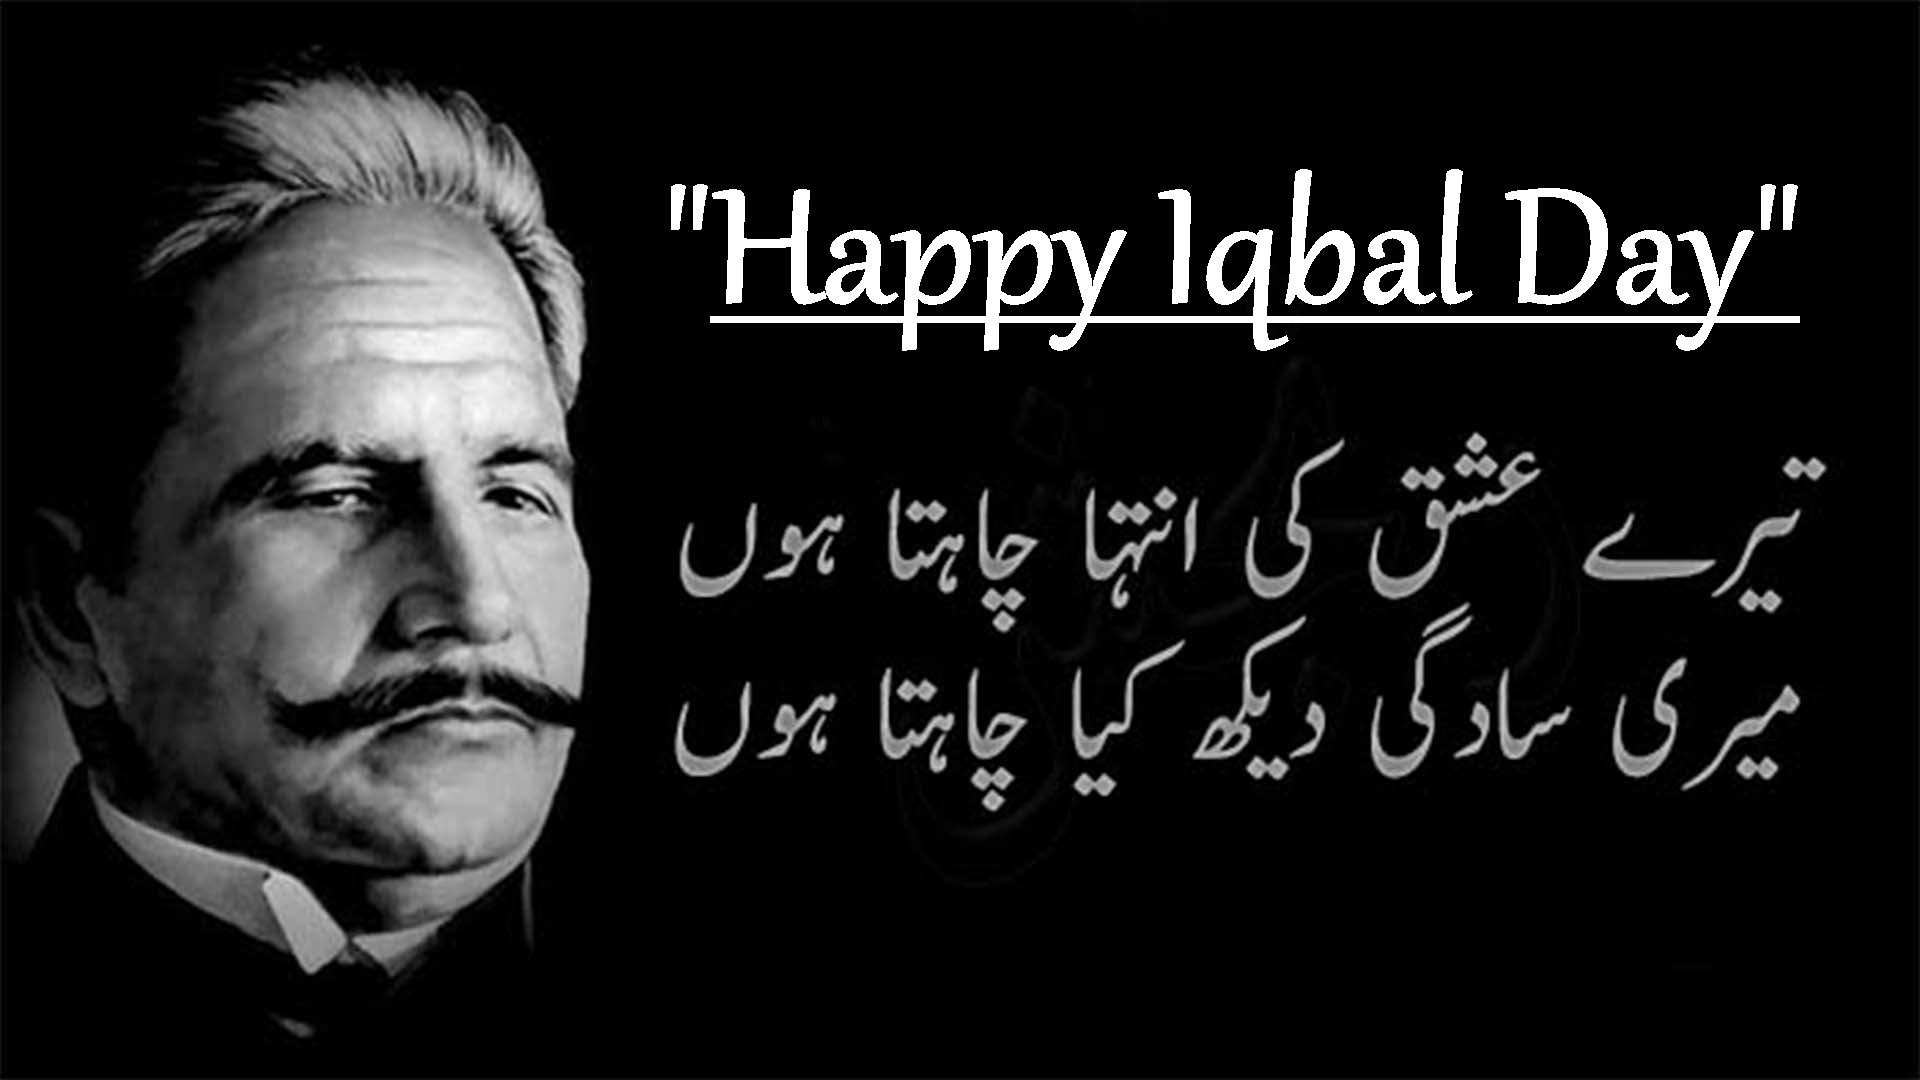 happy iqbal day 2017 image